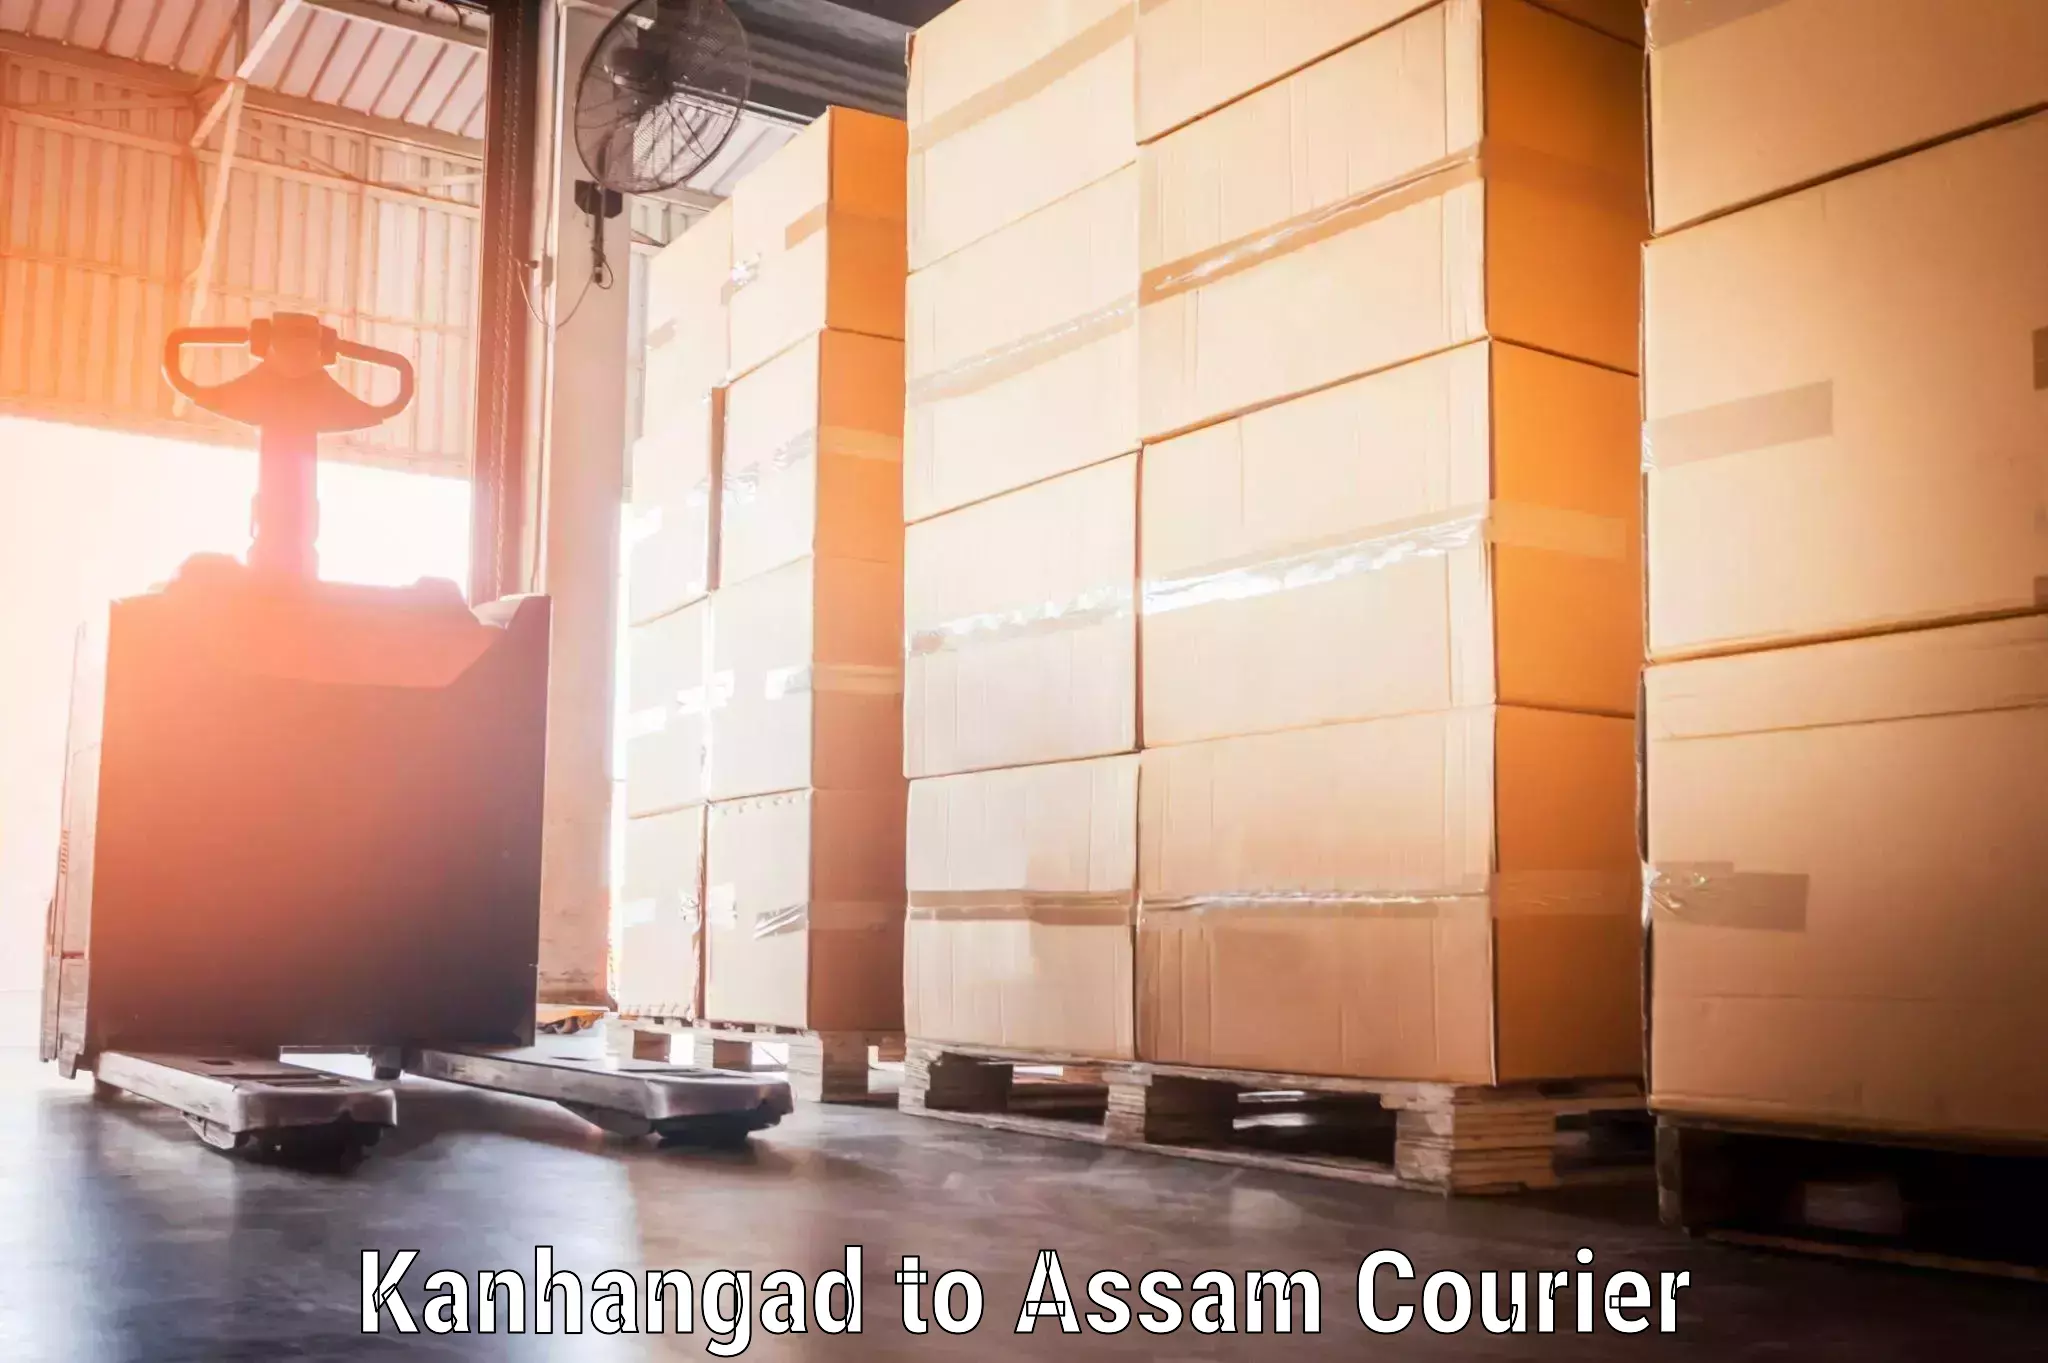 Luggage shipment specialists Kanhangad to Kusumtola